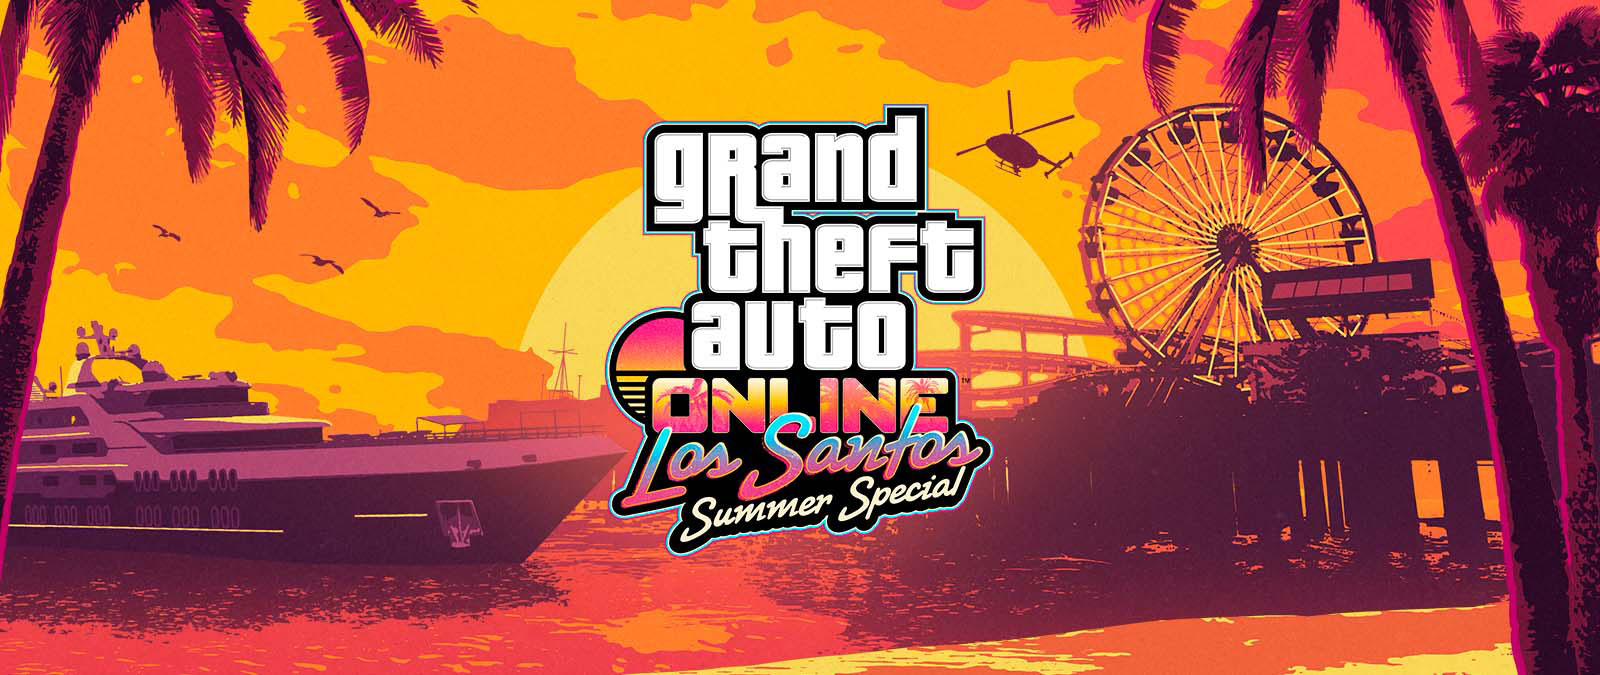 Grand Theft Auto Online. Los Santos Summer Special. Een jacht, een reuzenrad en een helikopter bij zonsondergang